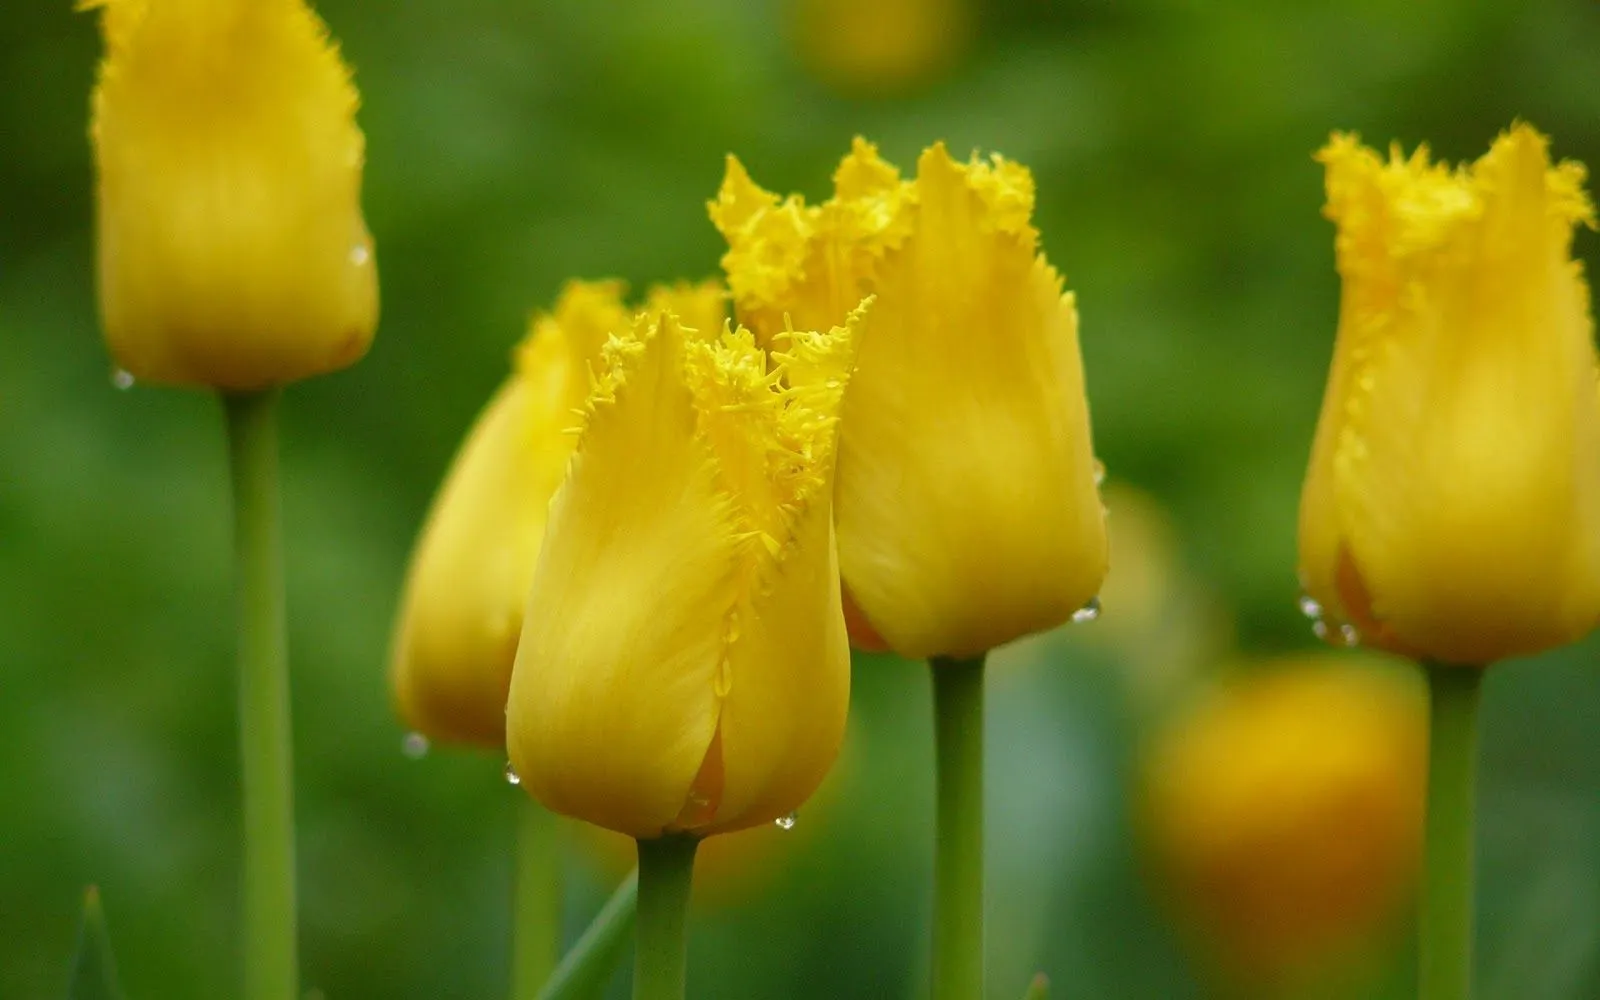 Flores Amarillas en HD - Yellow Flowers | Fotos e Imágenes en ...